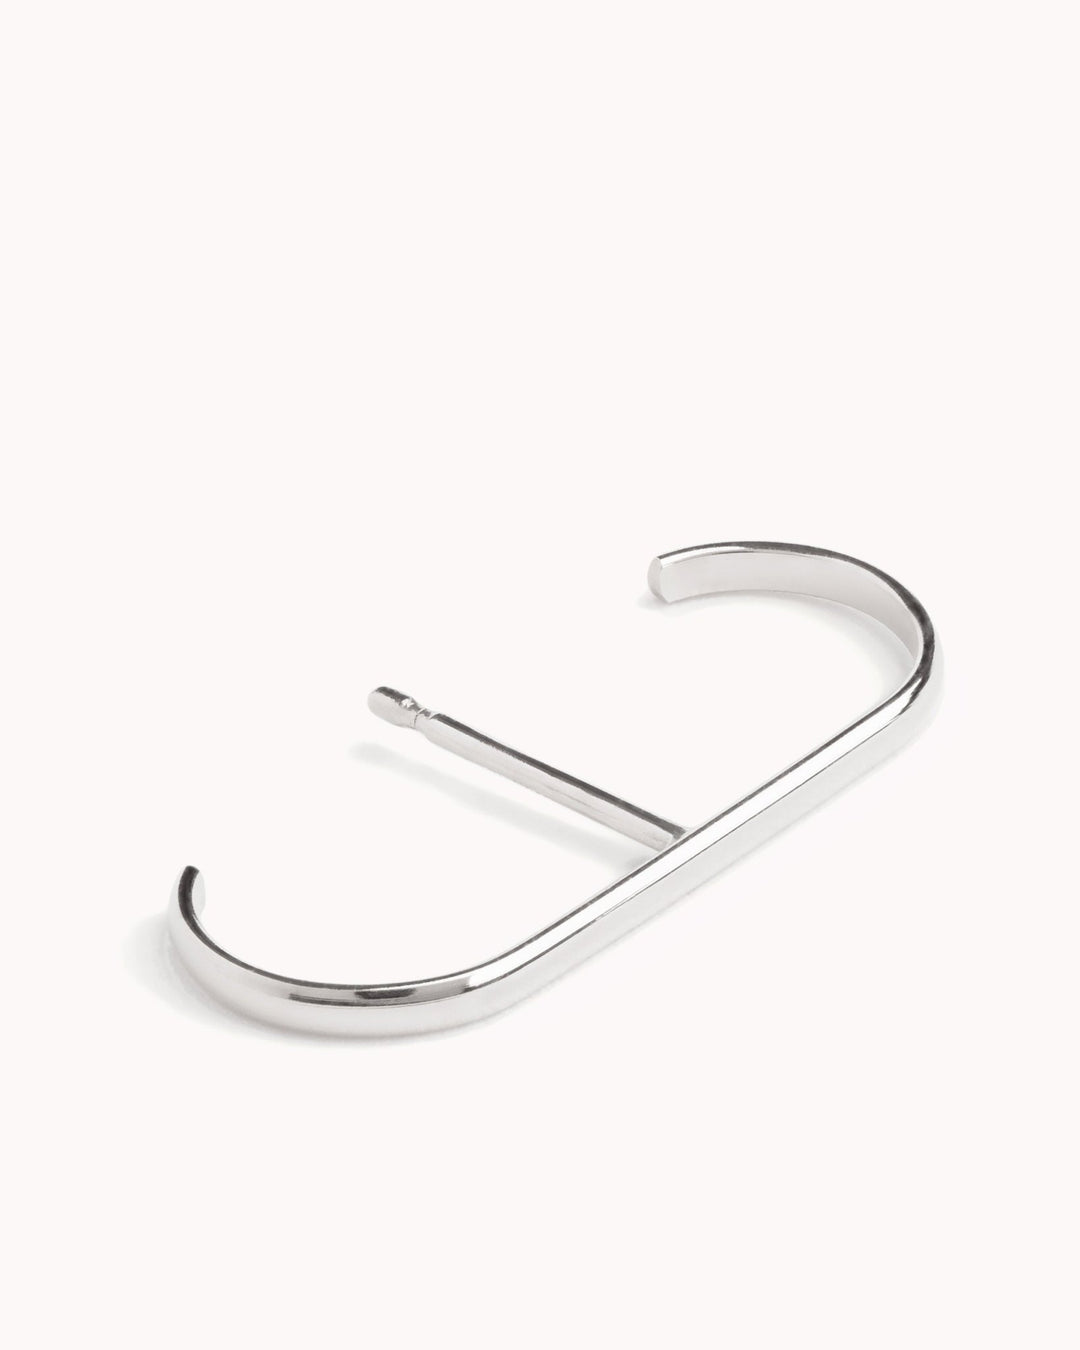 Anaelle Suspender Earrings - Revelmy